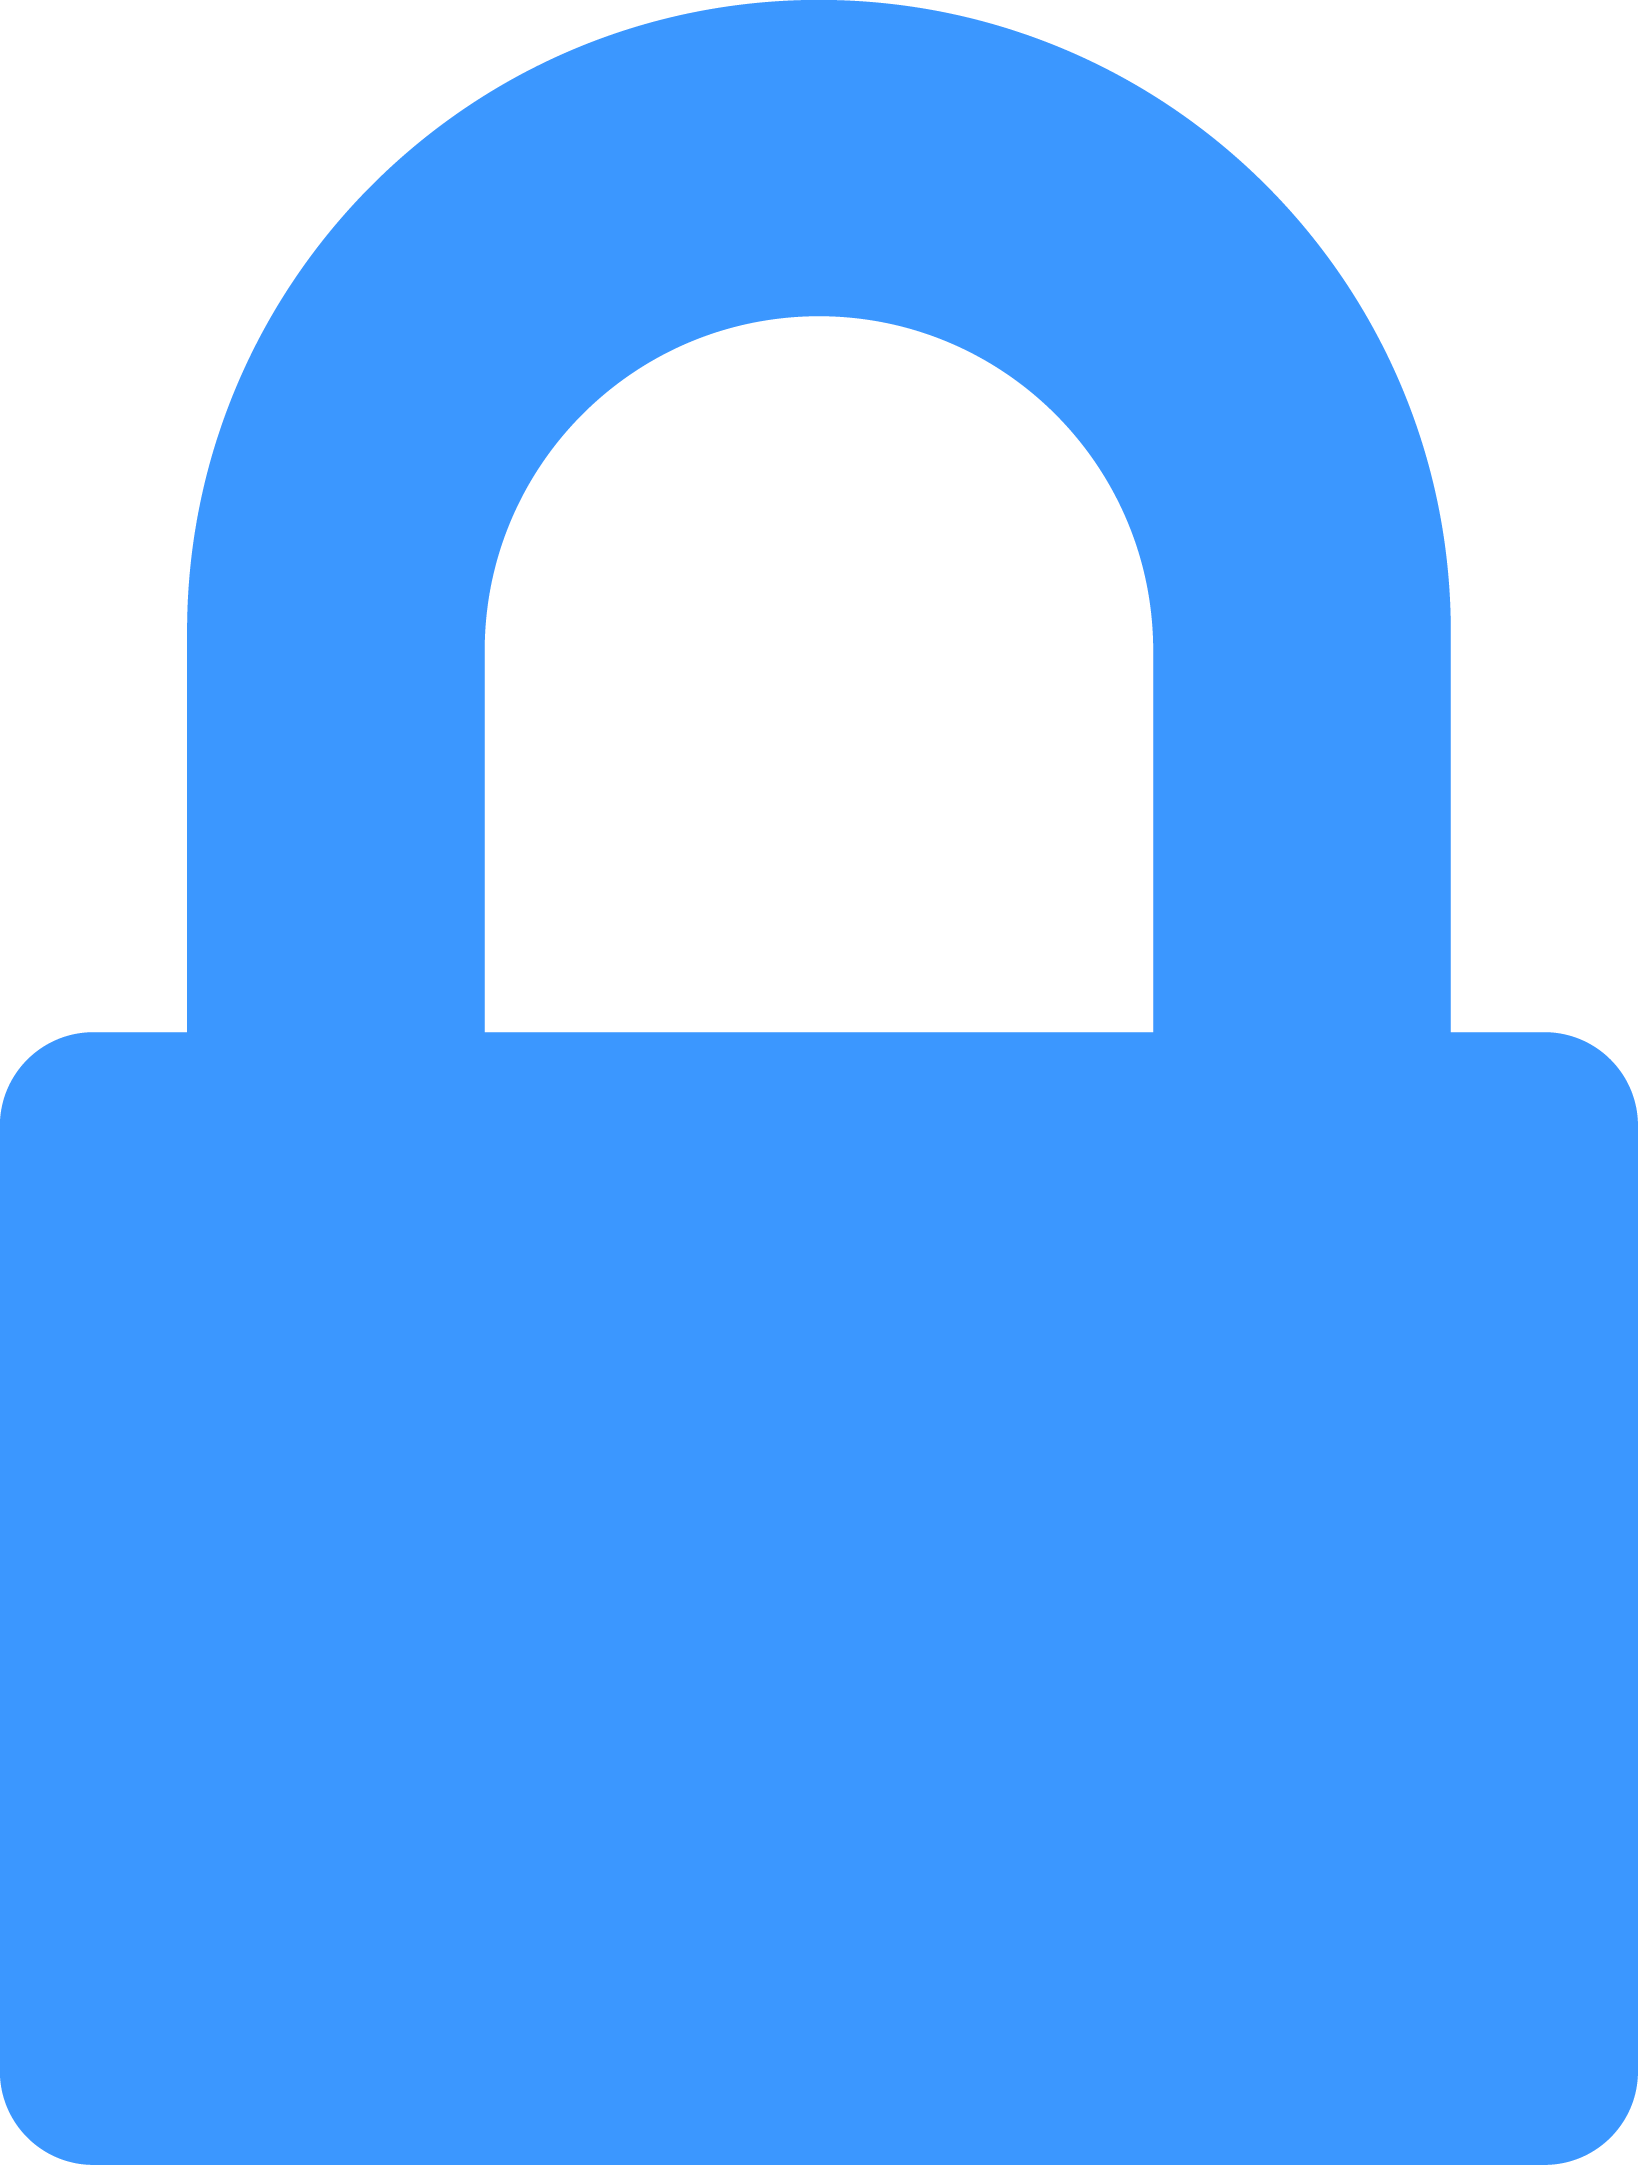 Padlock clipart password. Lock at getdrawings com